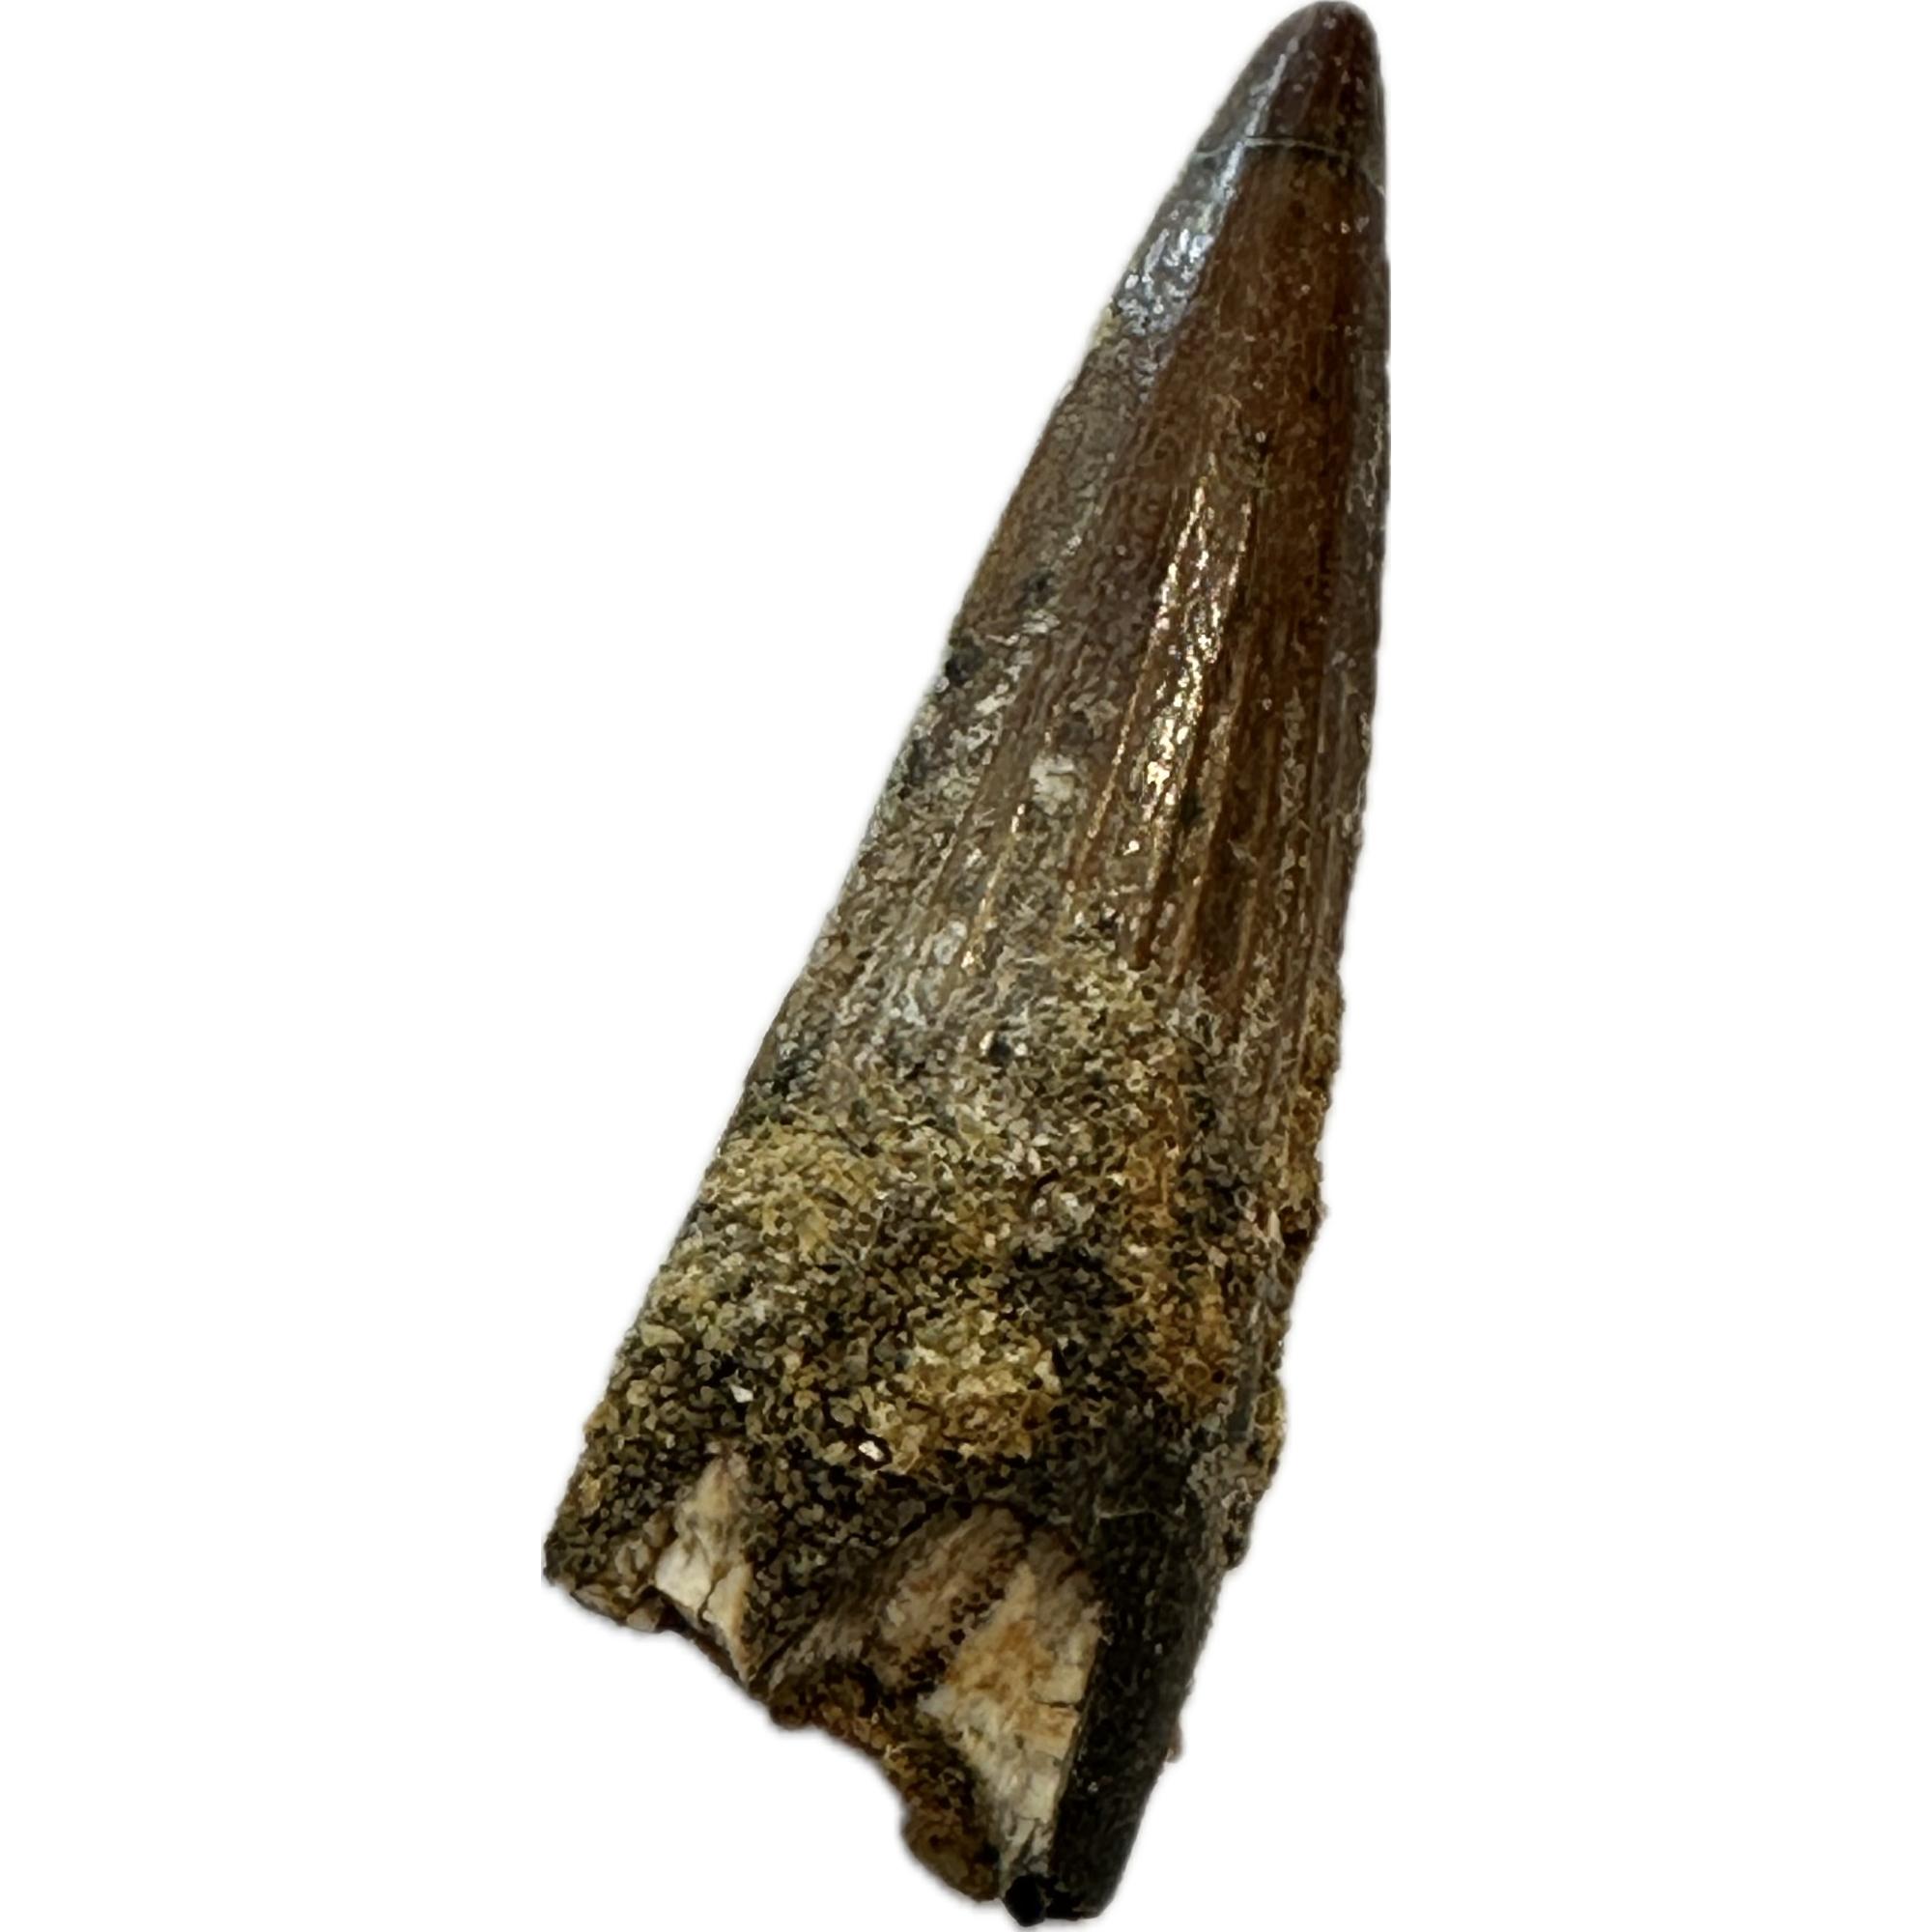 Spinosaurus dinosaur Tooth, 1 1/2″ Prehistoric Online